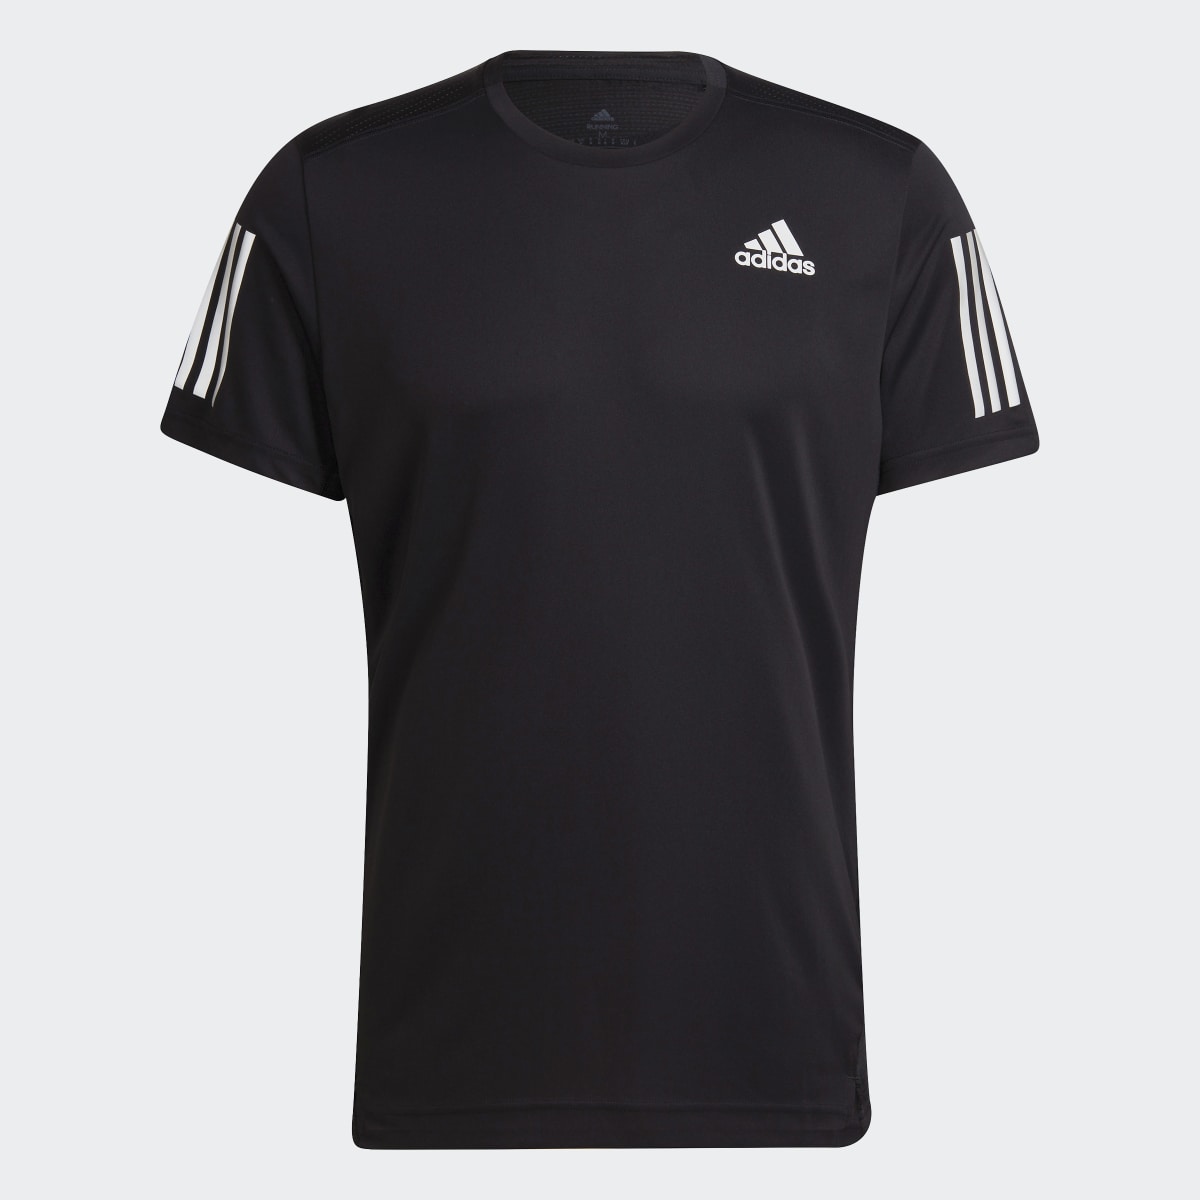 Adidas Own the Run T-Shirt. 4